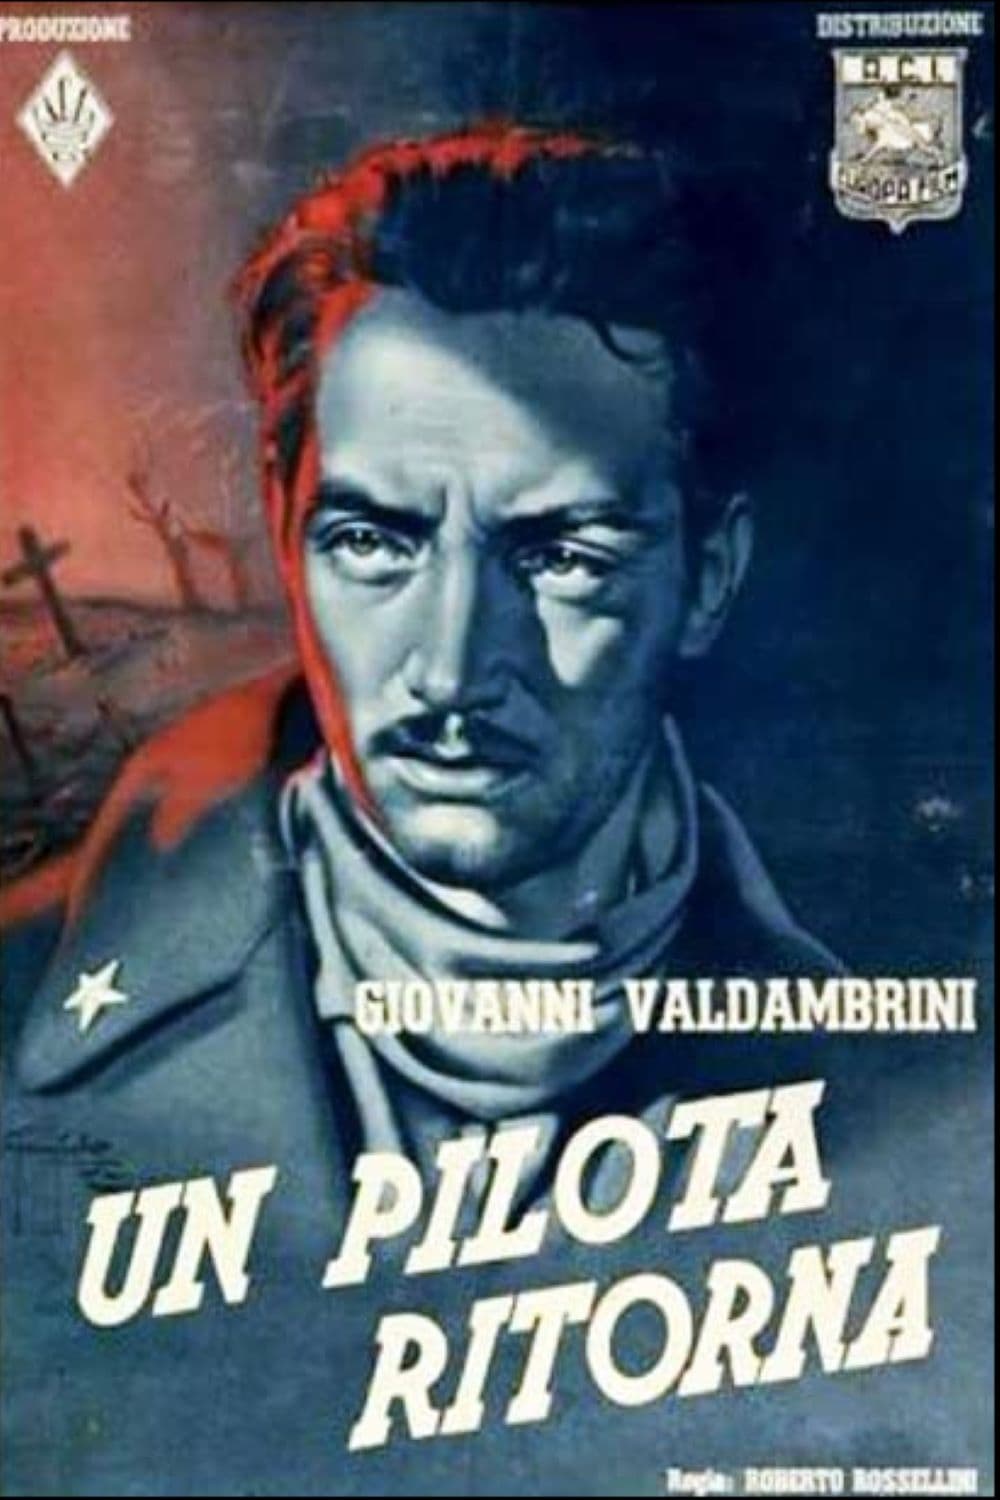 دانلود فیلم Un pilota ritorna 1942 با زیرنویس فارسی